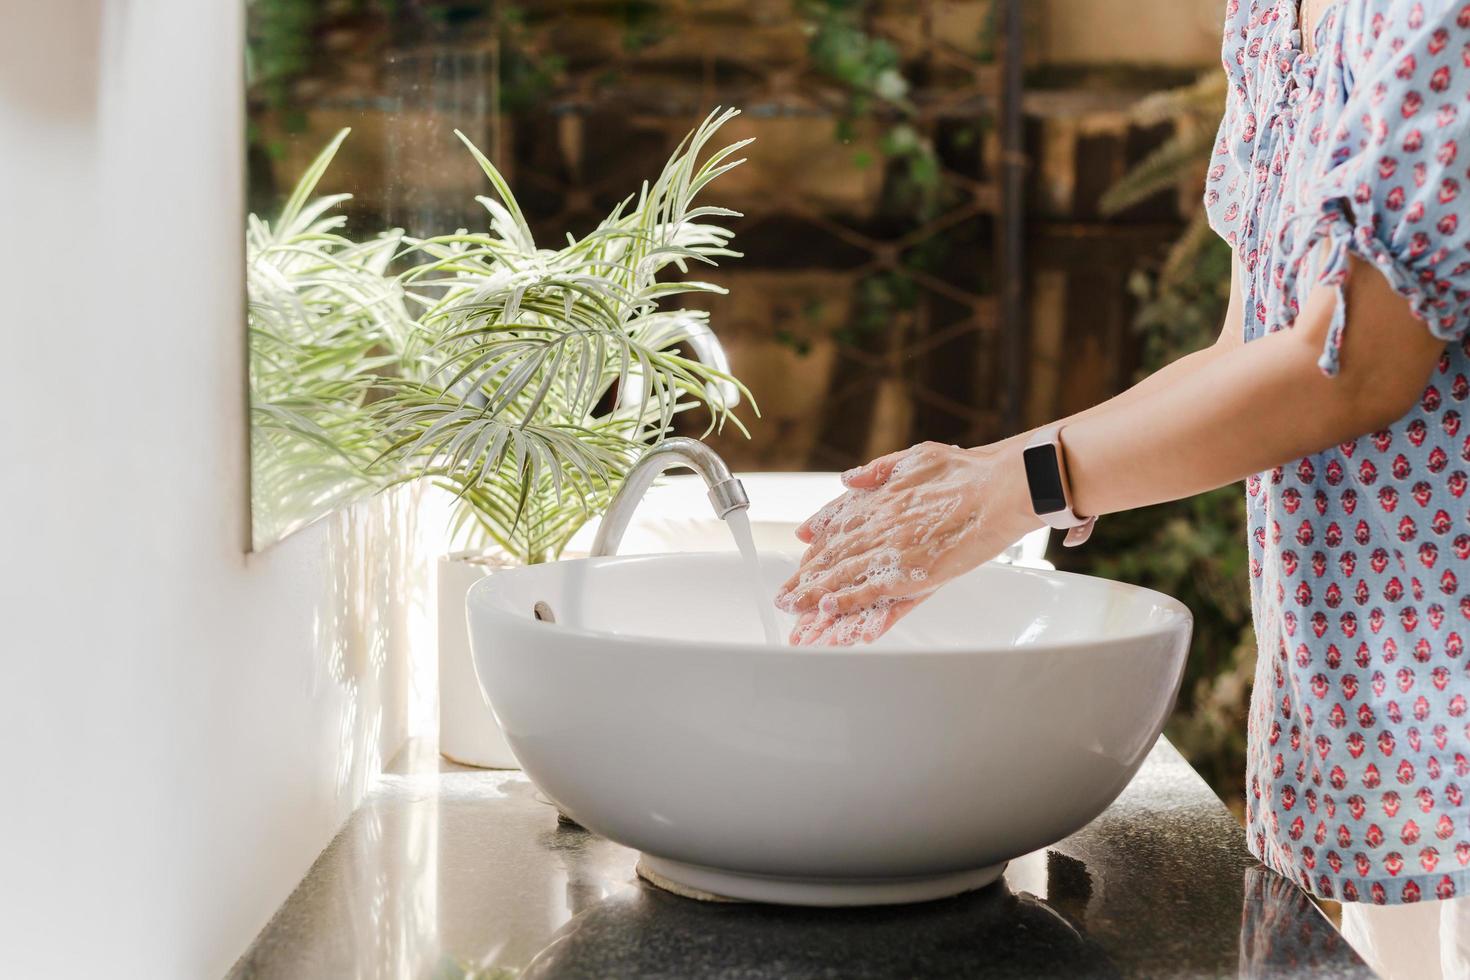 Frau wäscht sich die Hände mit Leitungswasser unter Wasserhahn am weißen Waschbecken. foto